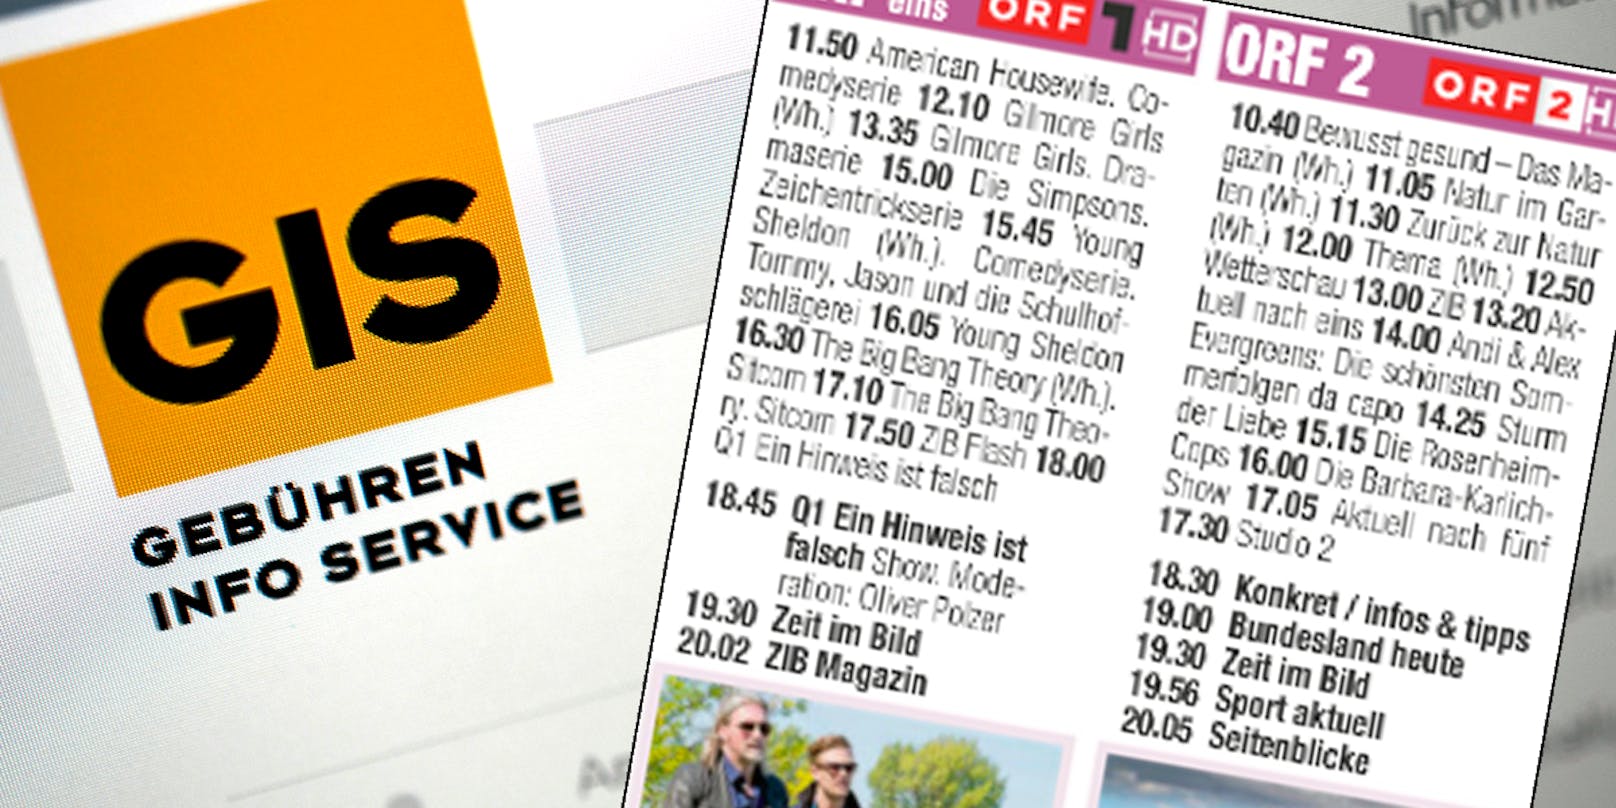 Ein Tag, zwei Sender, über 34 Stunden Wiederholungen. Klar, dass sich viele ORF-Zuschauer fragen: Wozu GIS zahlen?